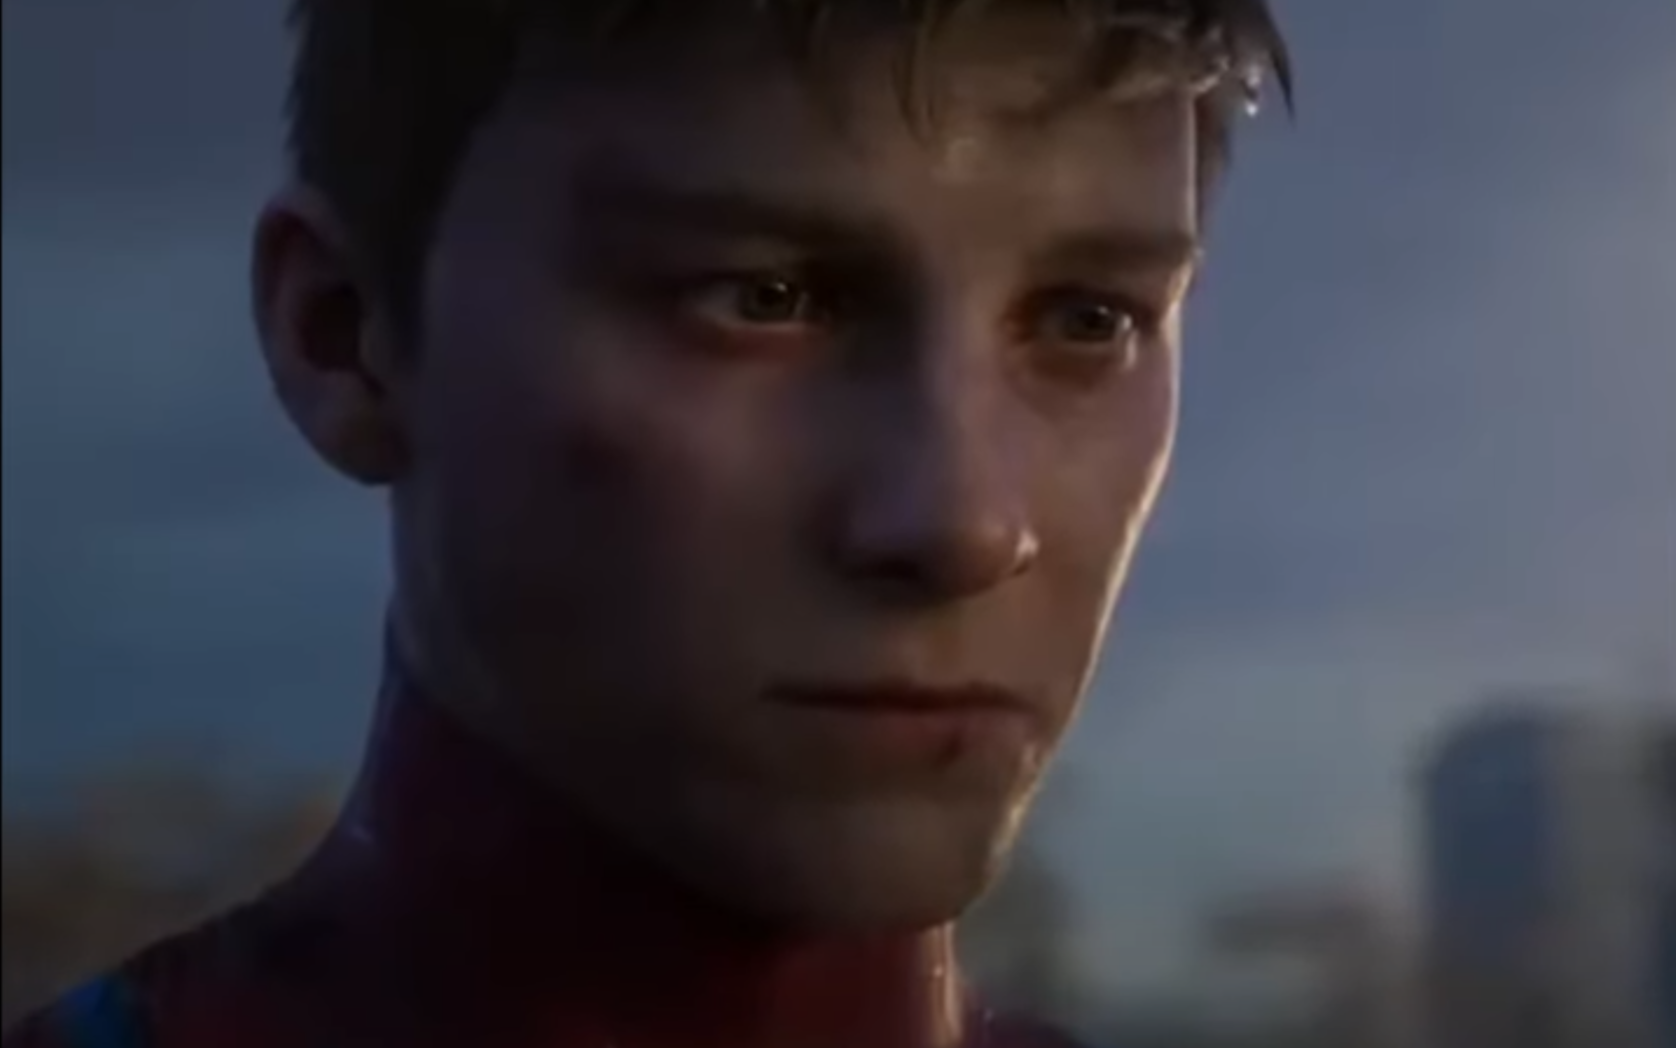 Spider-Man 2 Peter Parker